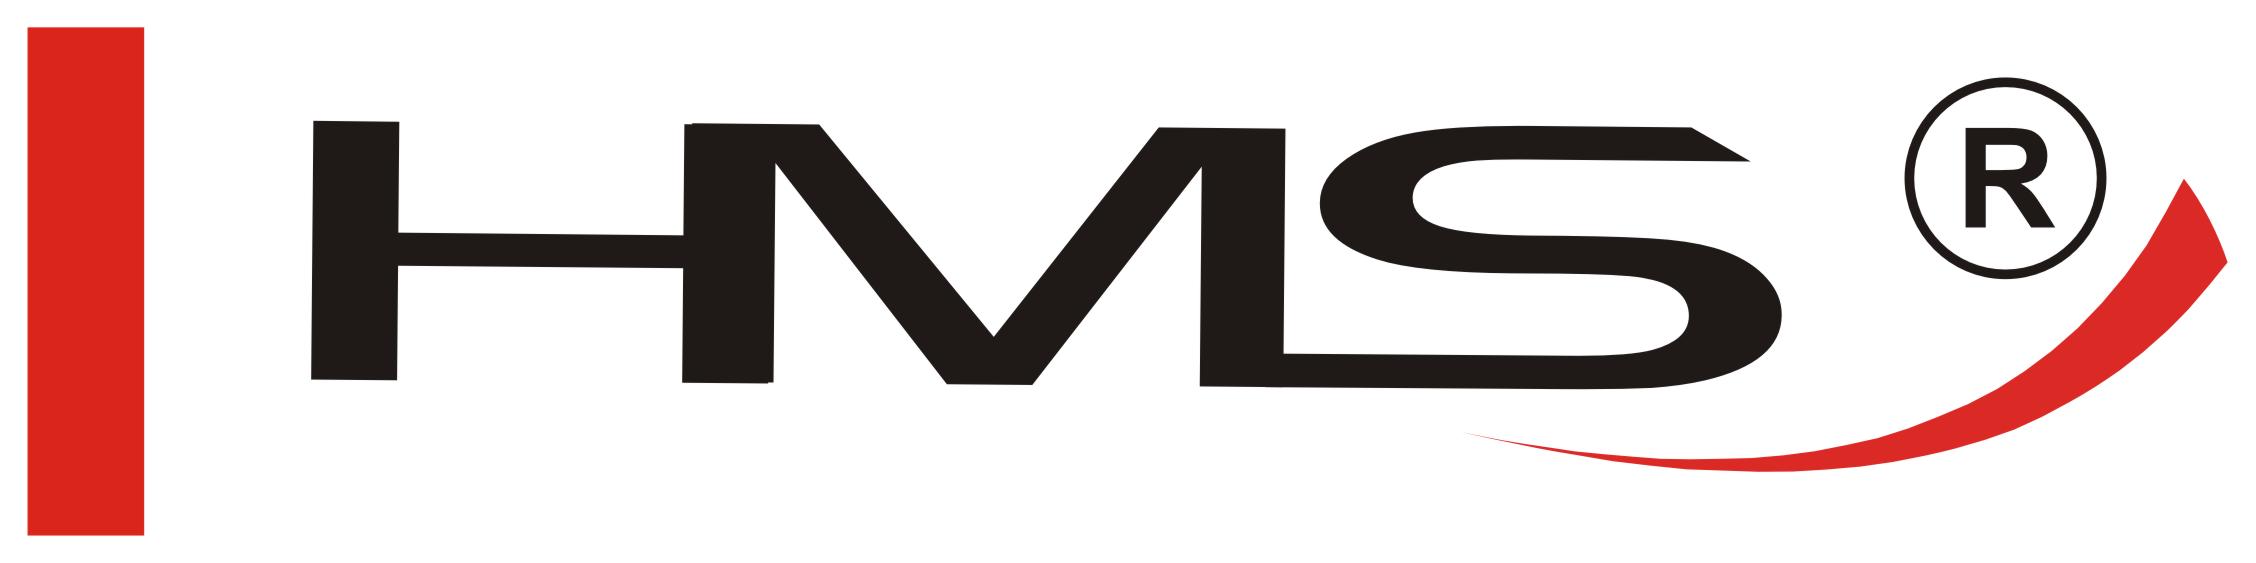 logo_hms.jpg